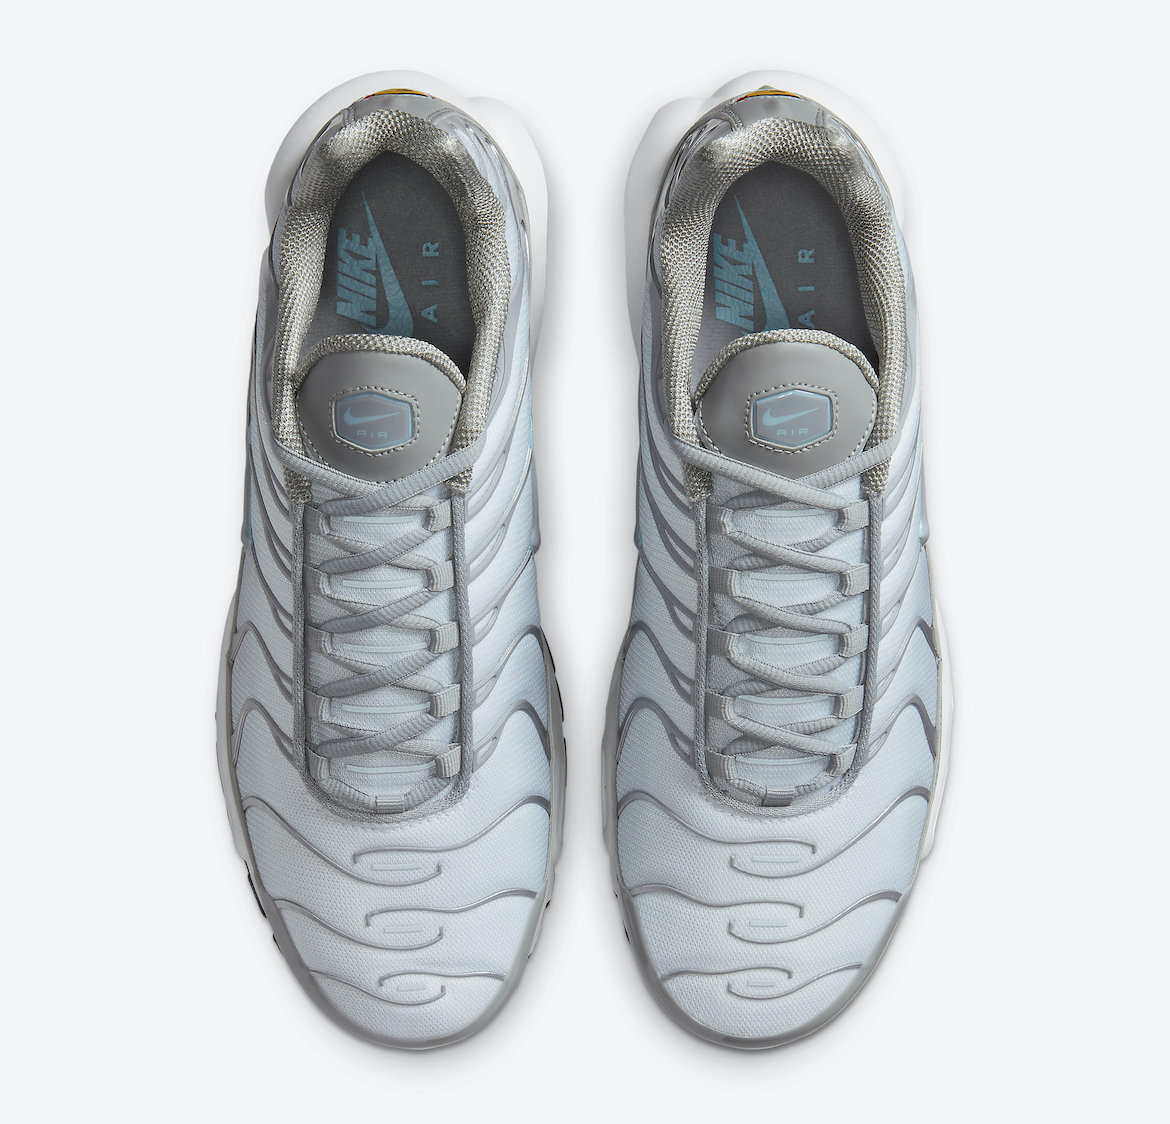 Nike Air Max Plus Smoke Grey Glacier Ice CZ7552-002 Release Date Info